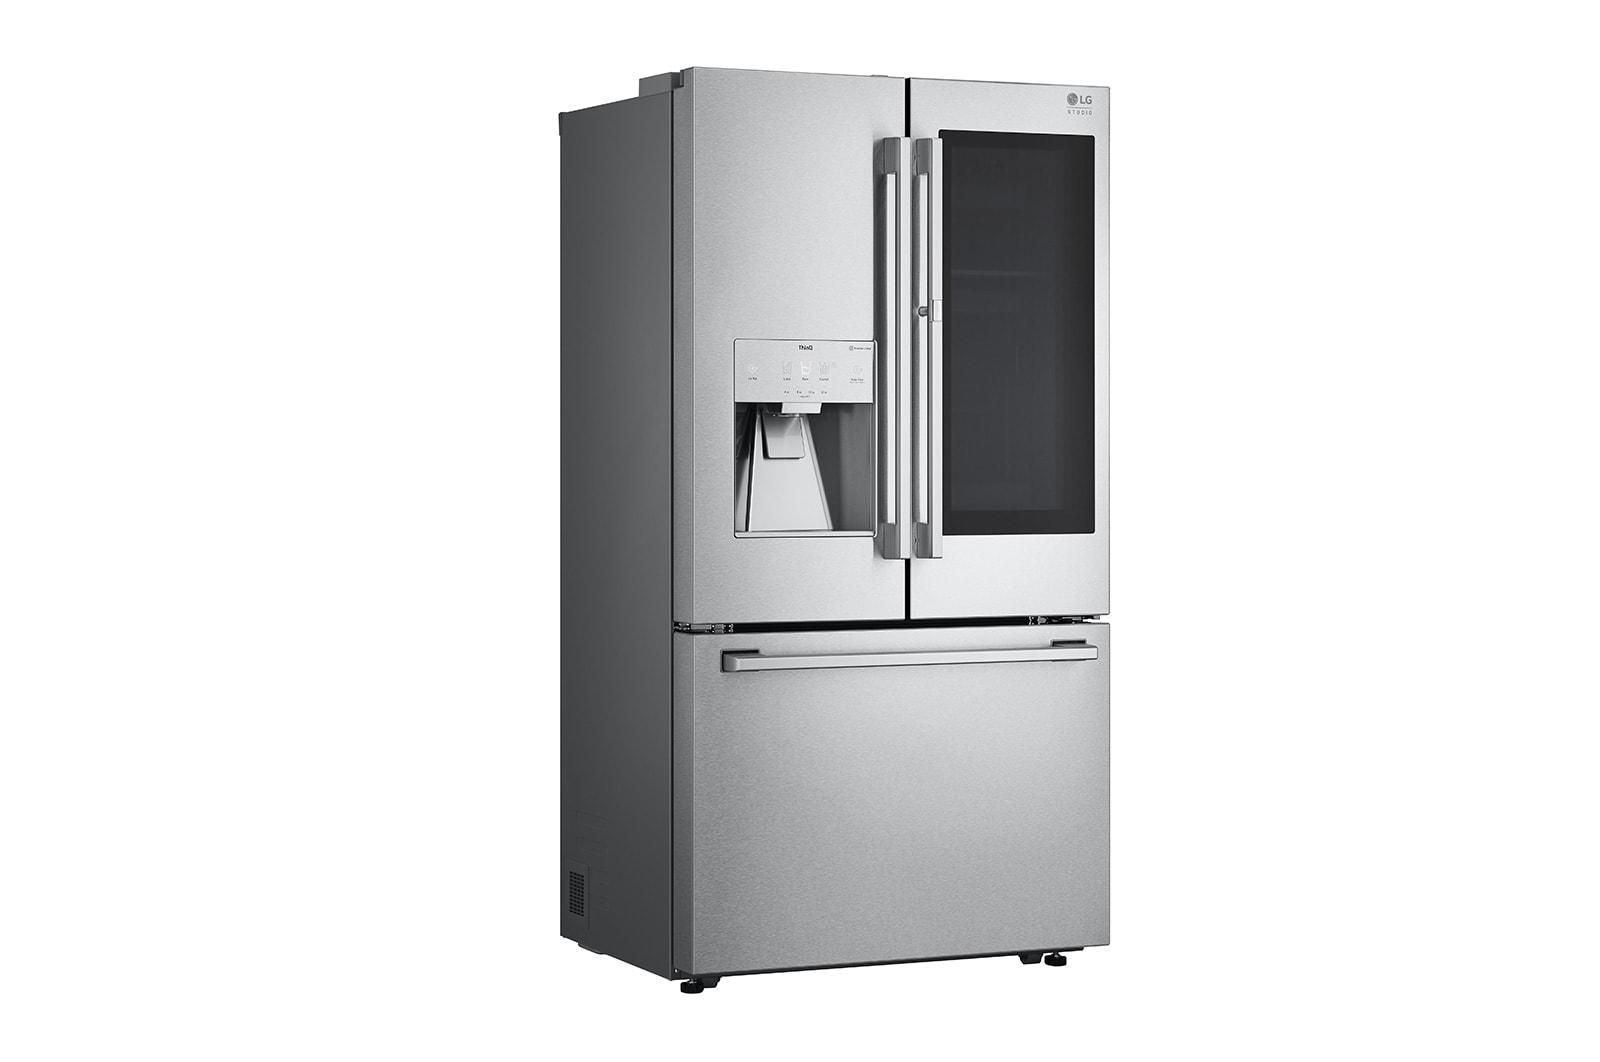 LG STUDIO 24 cu. ft. Smart InstaView® Door-in-Door® Large Capacity Counter-Depth Refrigerator with Craft Ice™ Maker